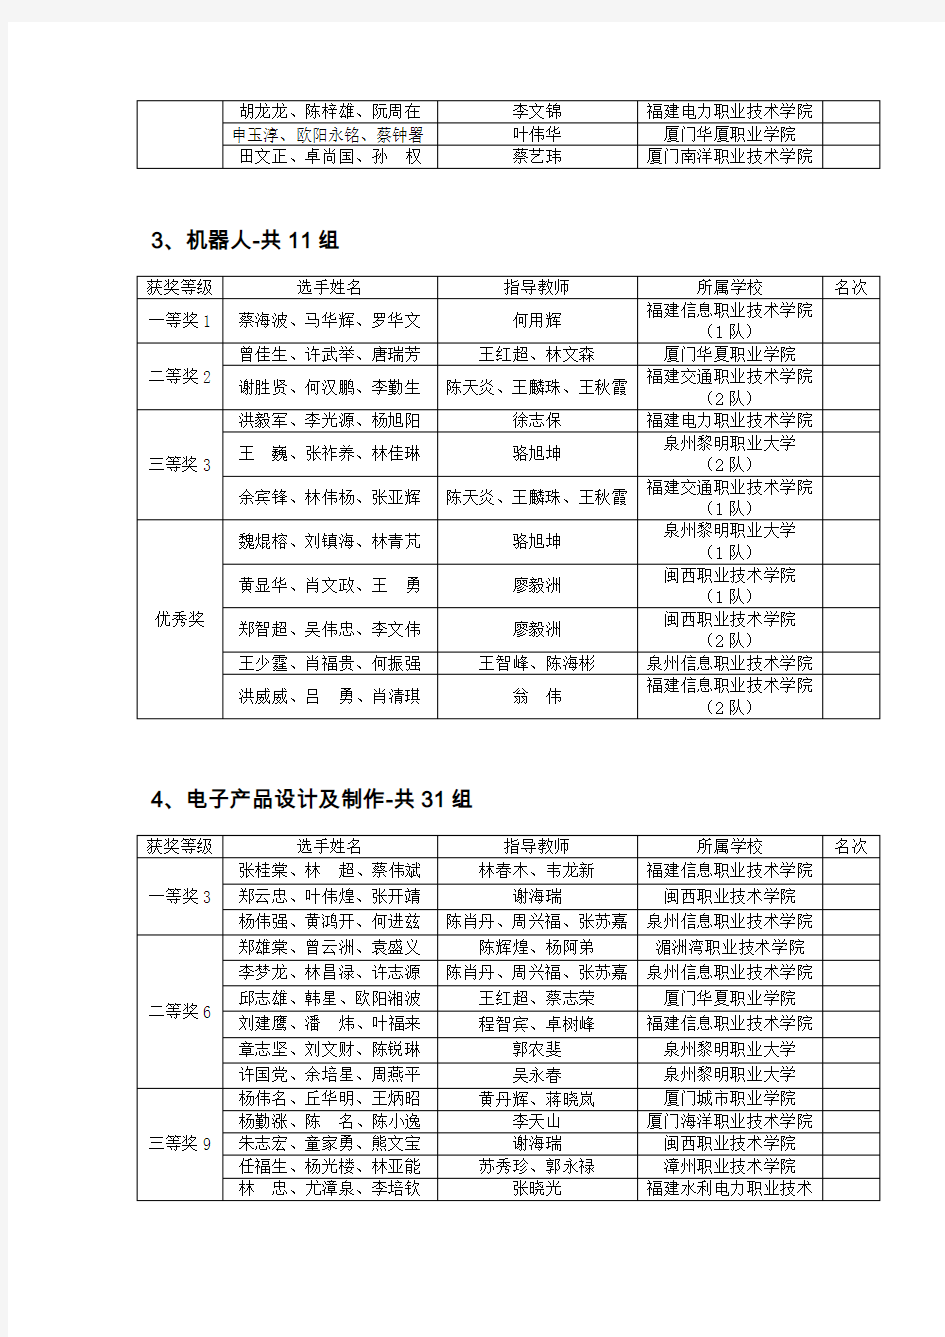 2010年福建省职业院校技能大赛(高职组)获奖名单